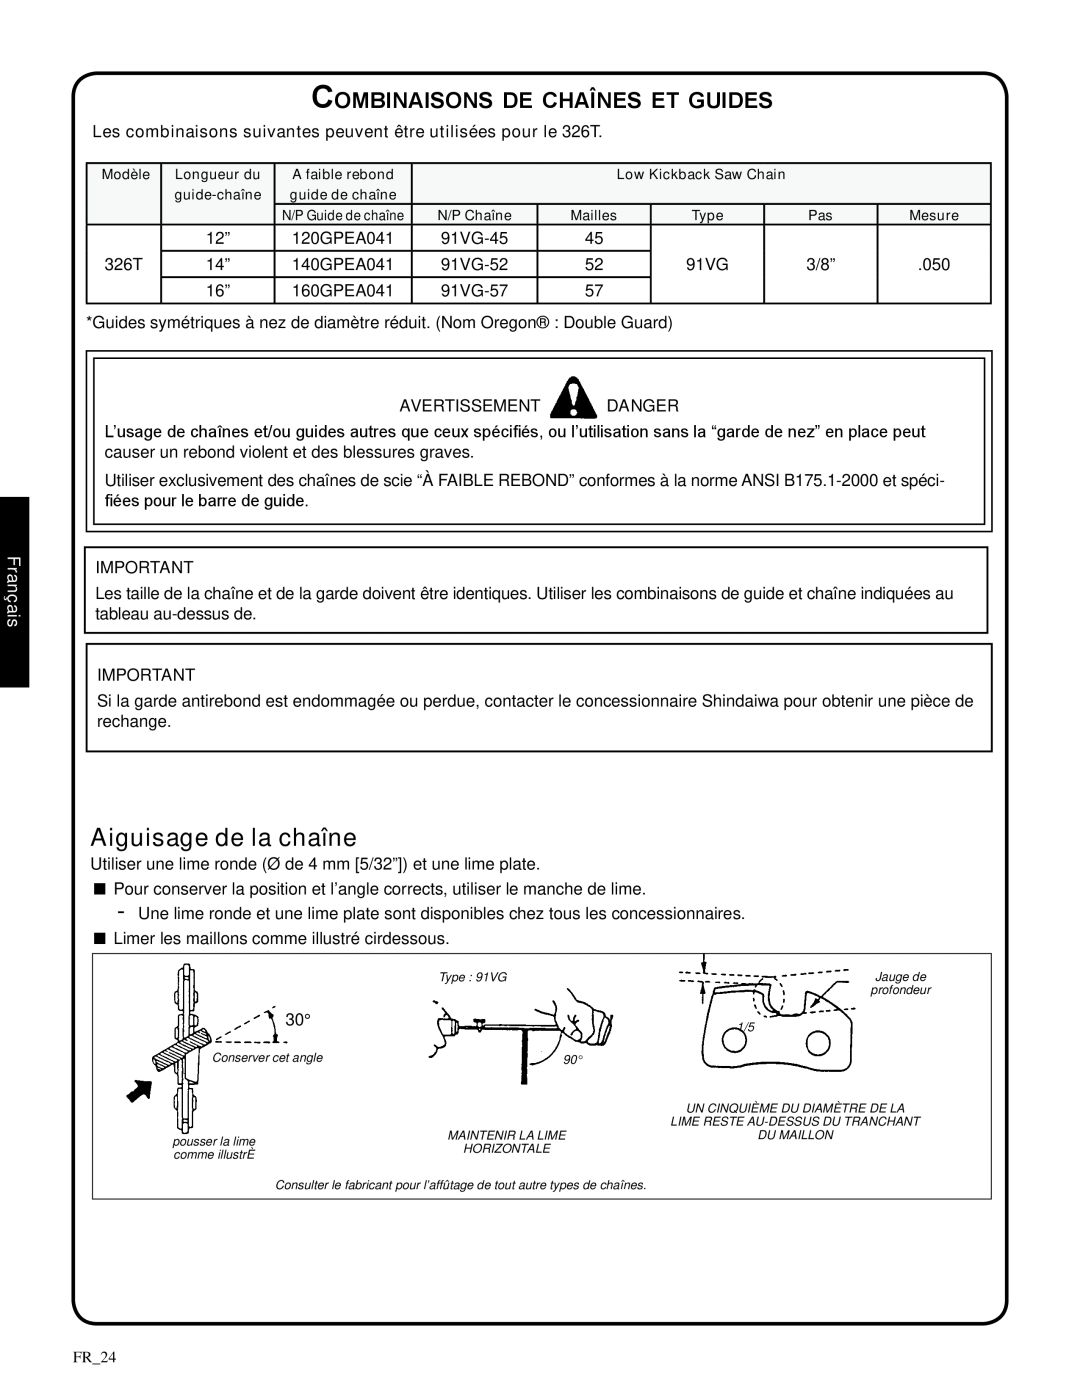 Shindaiwa 82085 manual Aiguisage de la chaîne, Combinaisons de chaînes et guides, Français, 326T, avertissement danger 